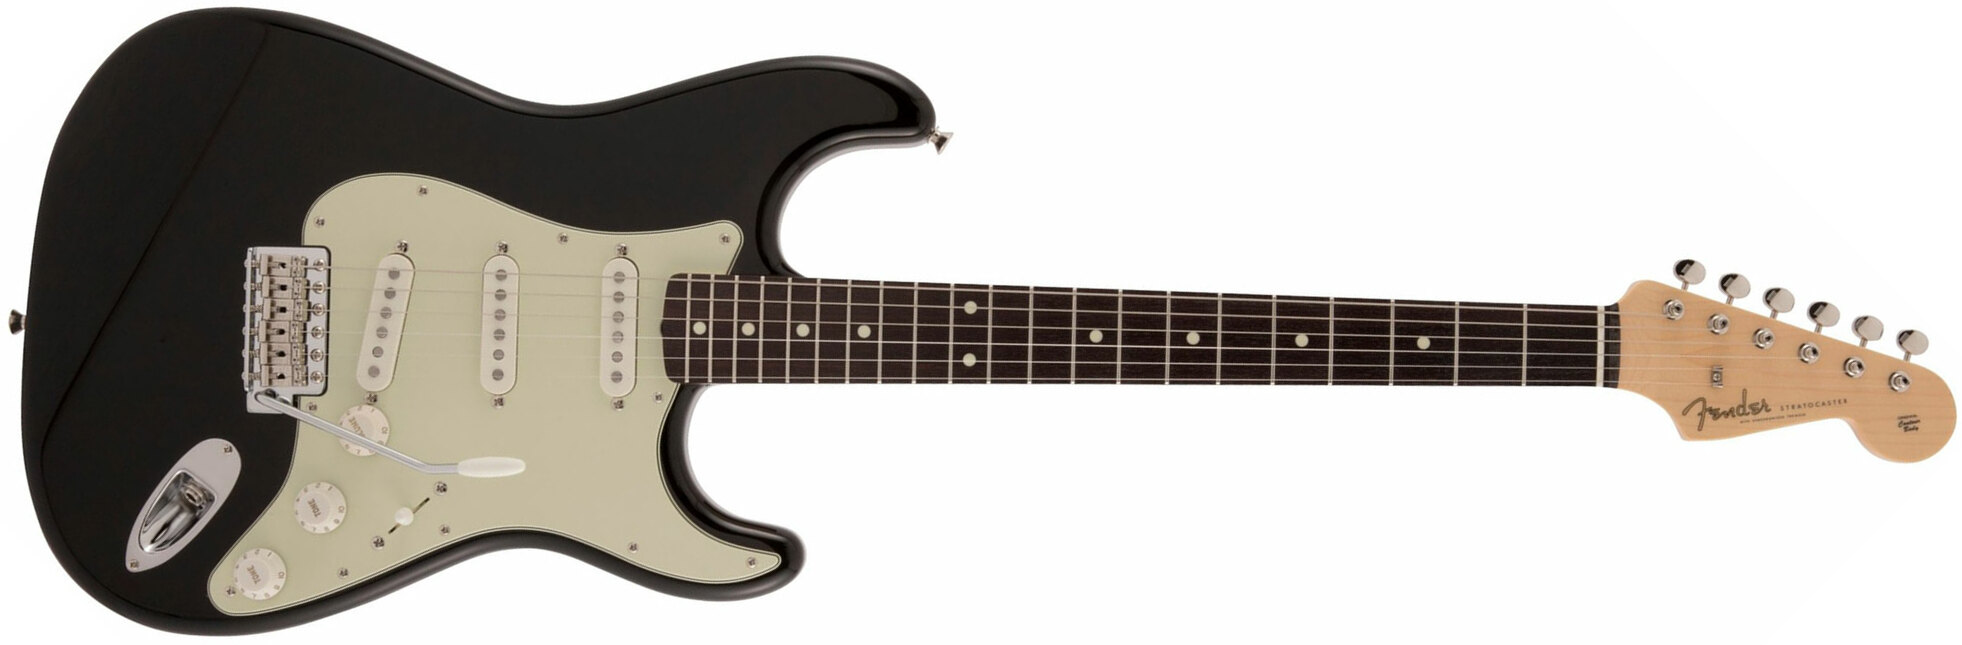 Fender Strat Traditional Ii 60s Mij Jap 3s Trem Rw - Black - Elektrische gitaar in Str-vorm - Main picture